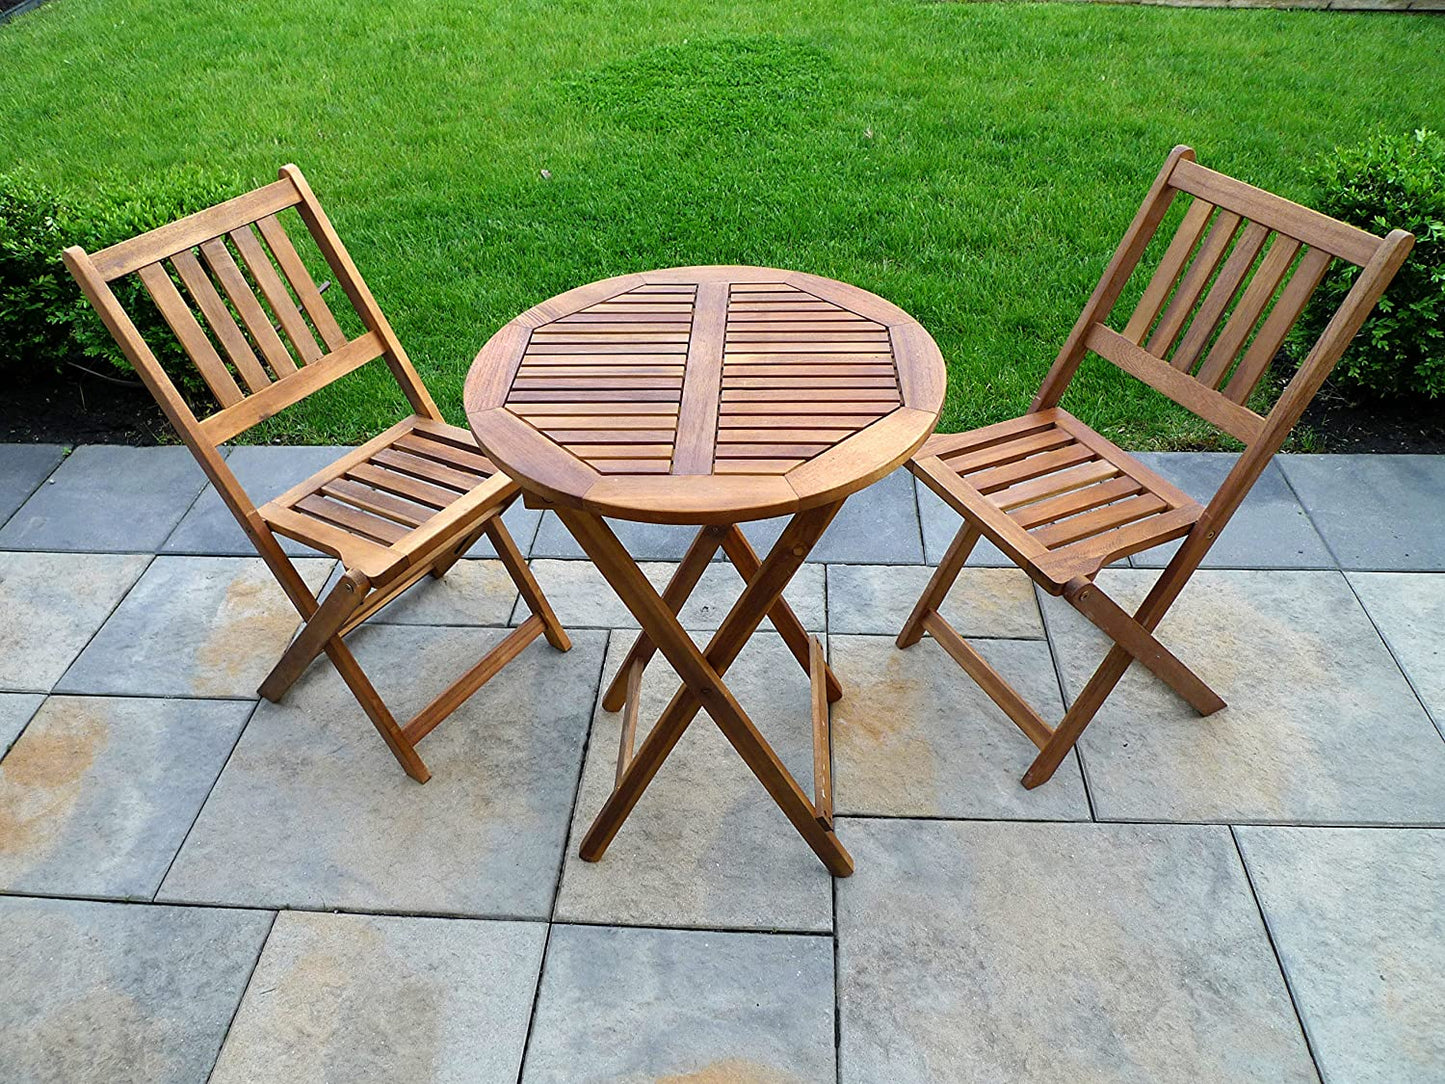 Garden Indoor / Outdoor Foldable Acacia Hardwood Bistro Table Set